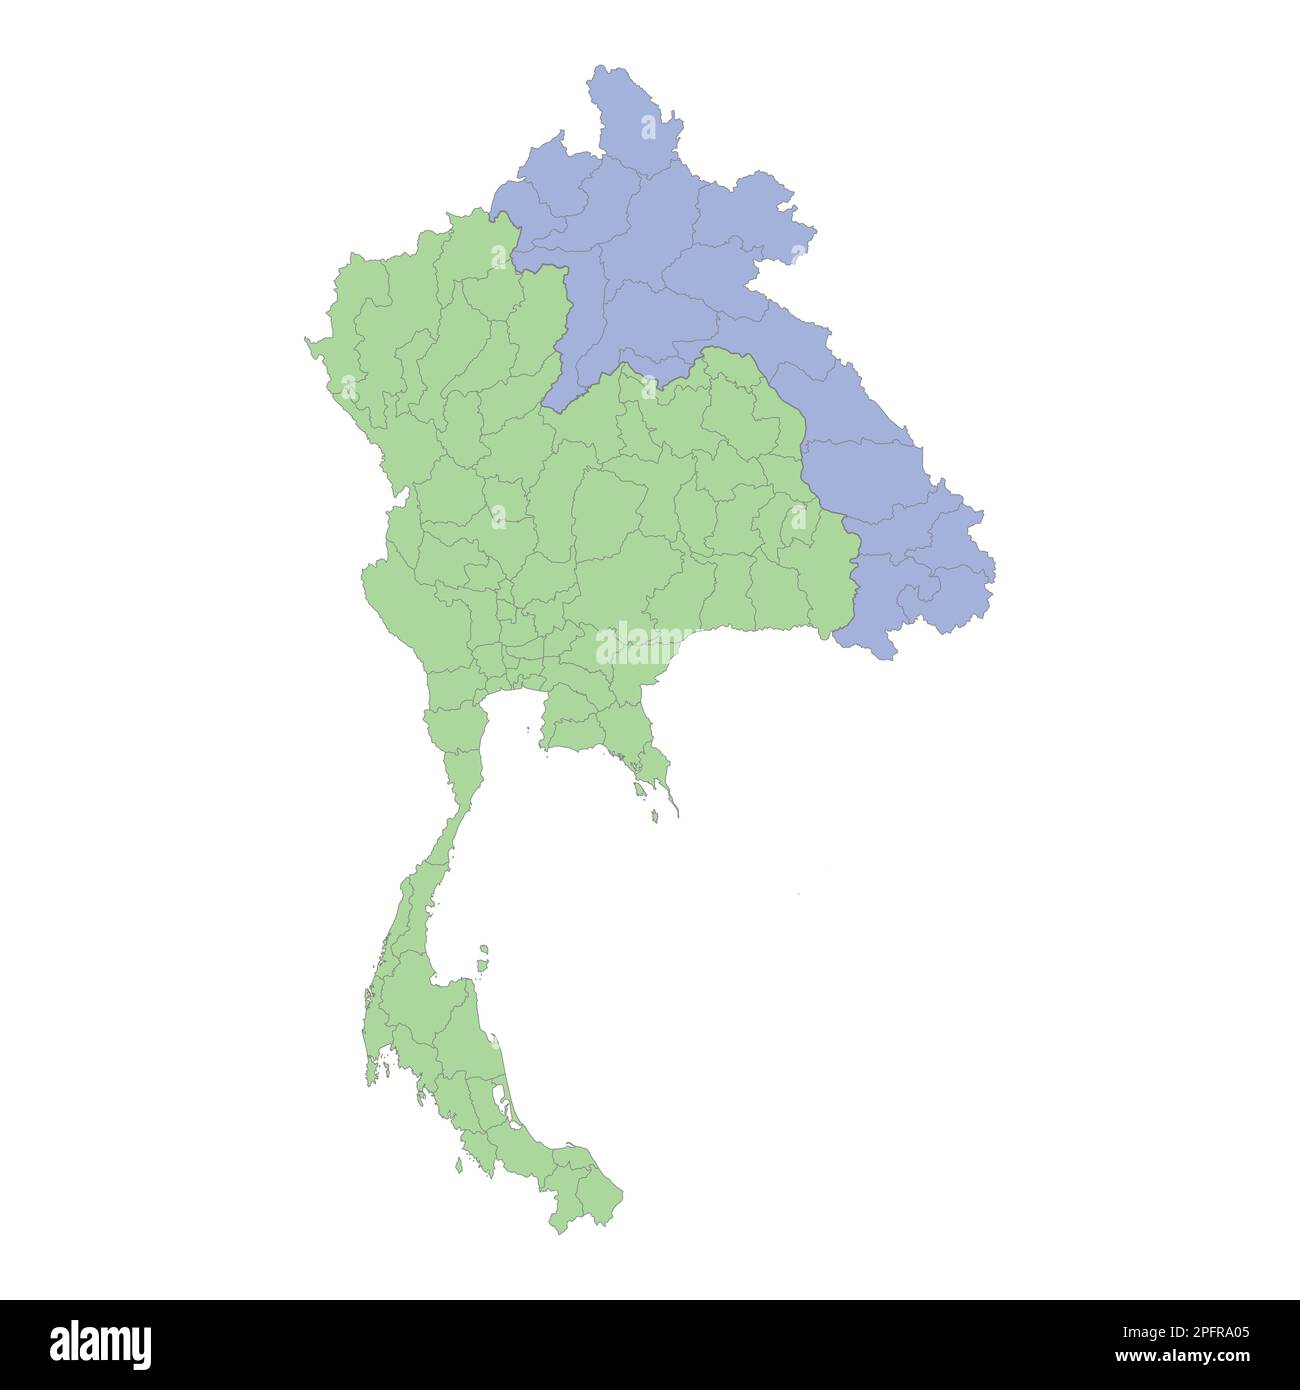 Mappa politica di alta qualità della Thailandia e del Laos con i confini delle regioni o province. Illustrazione vettoriale Illustrazione Vettoriale